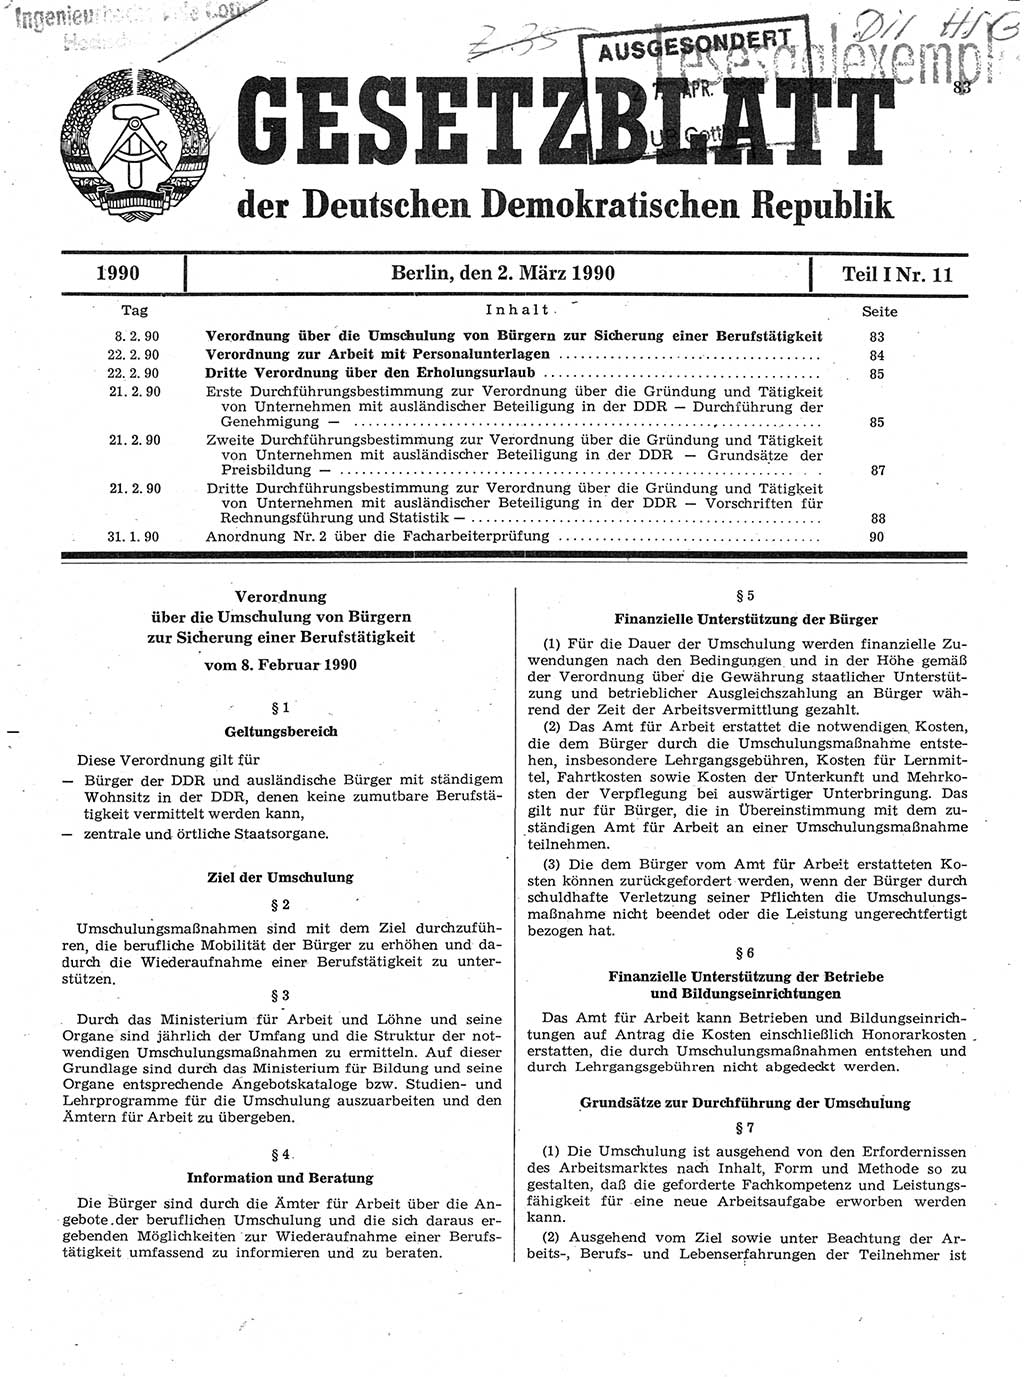 Gesetzblatt (GBl.) der Deutschen Demokratischen Republik (DDR) Teil Ⅰ 1990, Seite 83 (GBl. DDR Ⅰ 1990, S. 83)